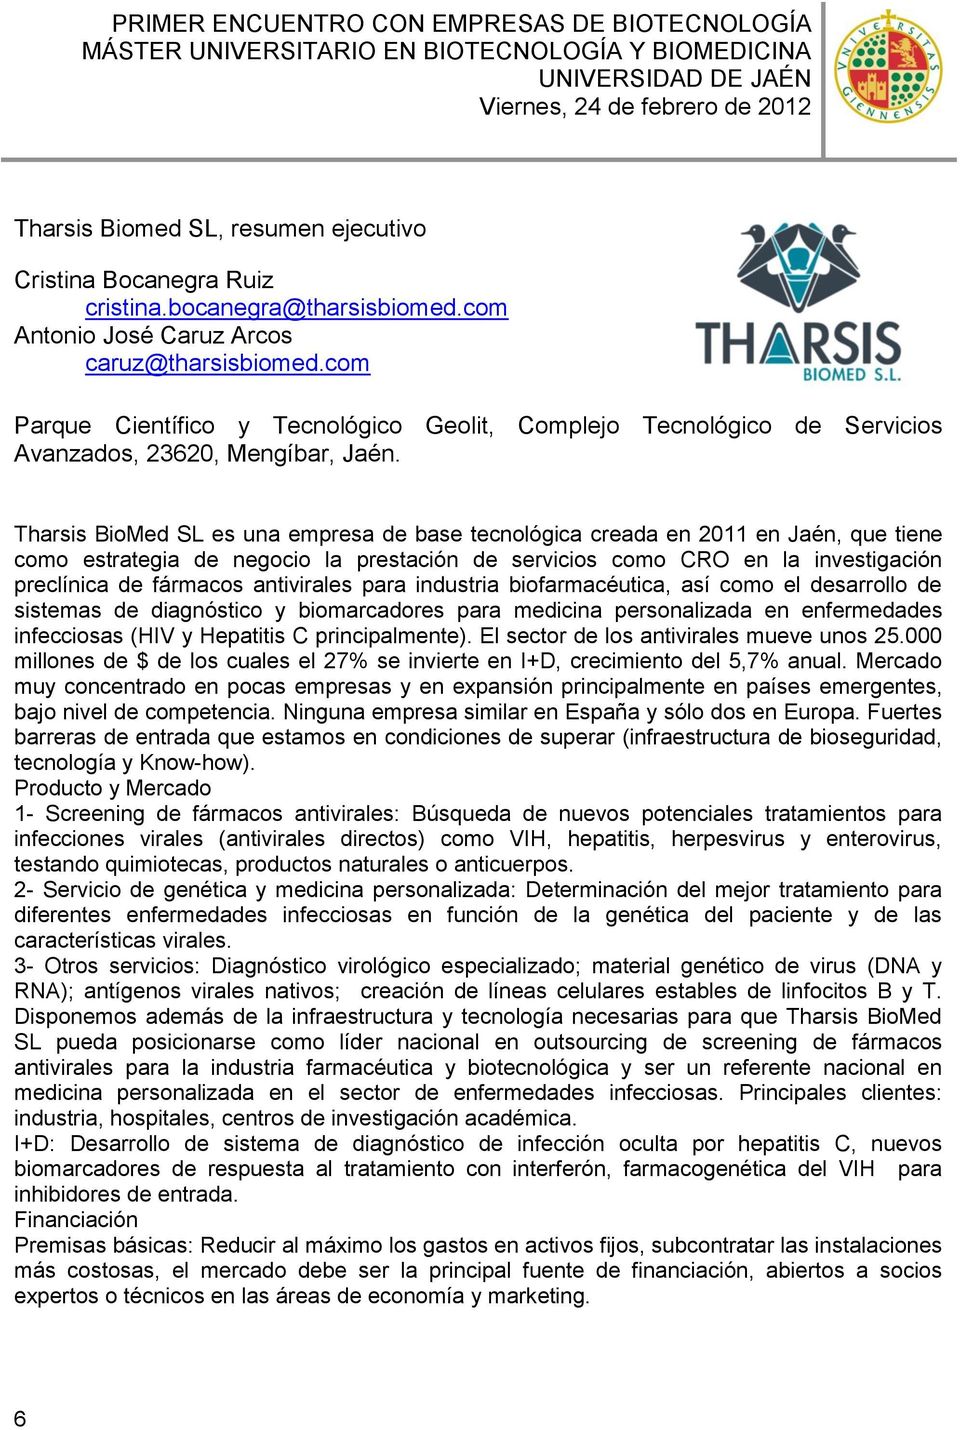 Tharsis BioMed SL es una empresa de base tecnológica creada en 2011 en Jaén, que tiene como estrategia de negocio la prestación de servicios como CRO en la investigación preclínica de fármacos